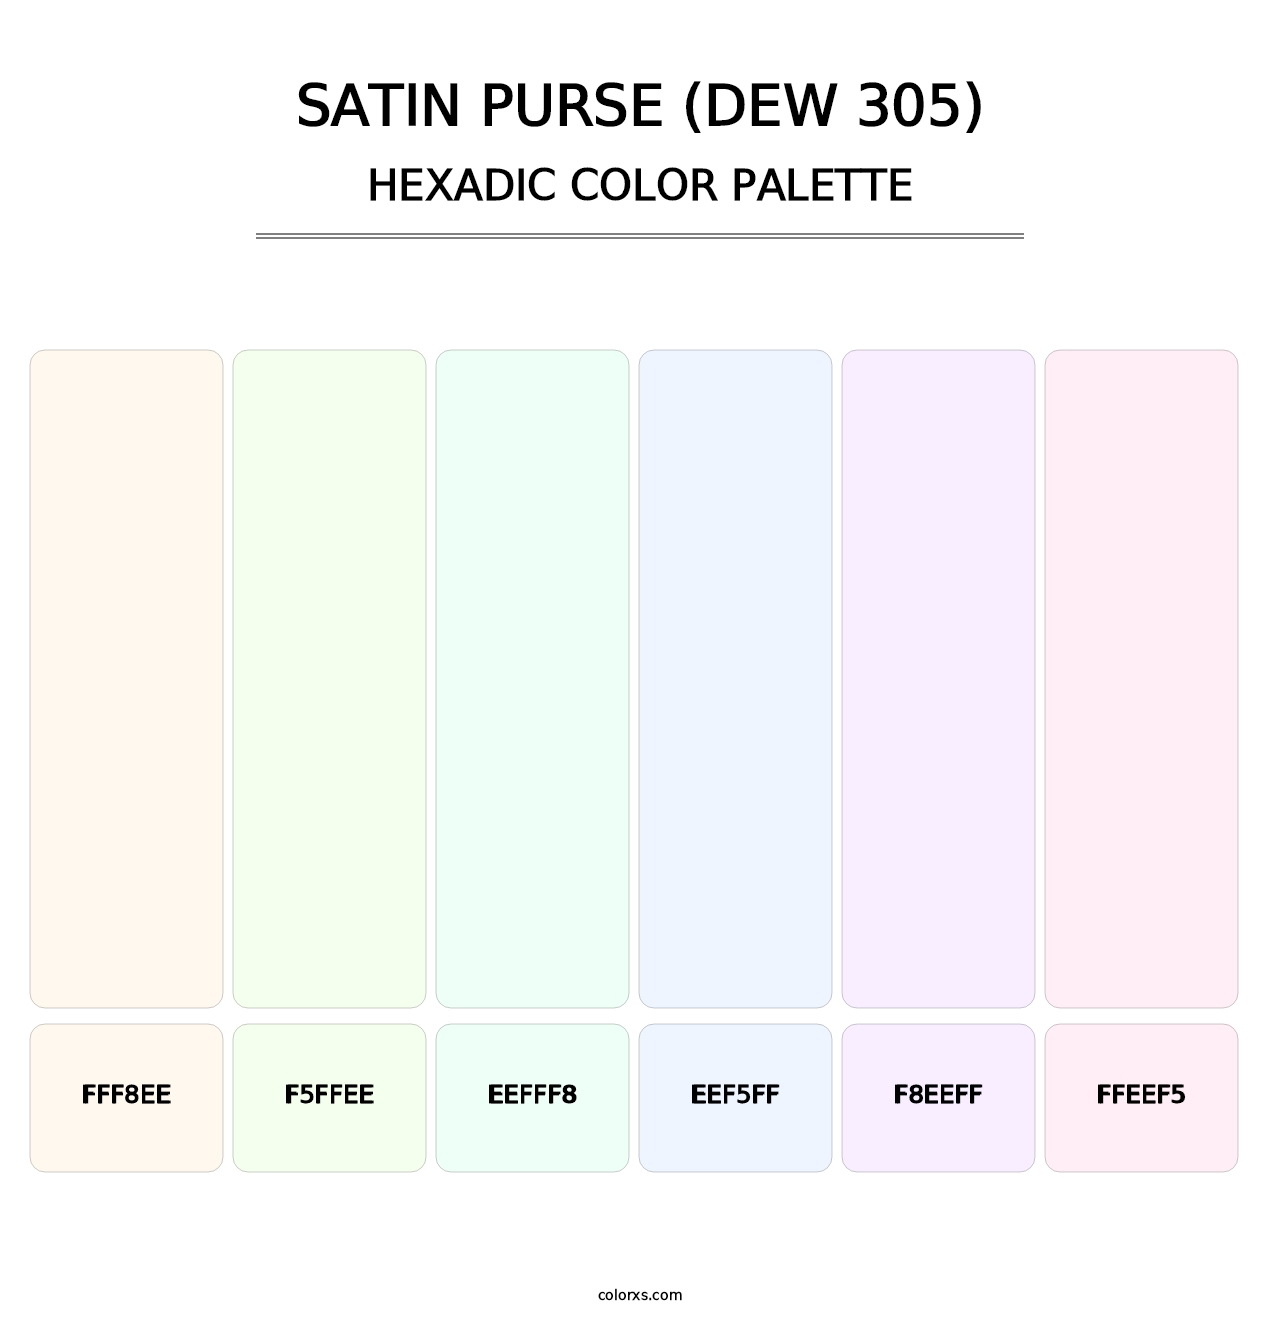 Satin Purse (DEW 305) - Hexadic Color Palette